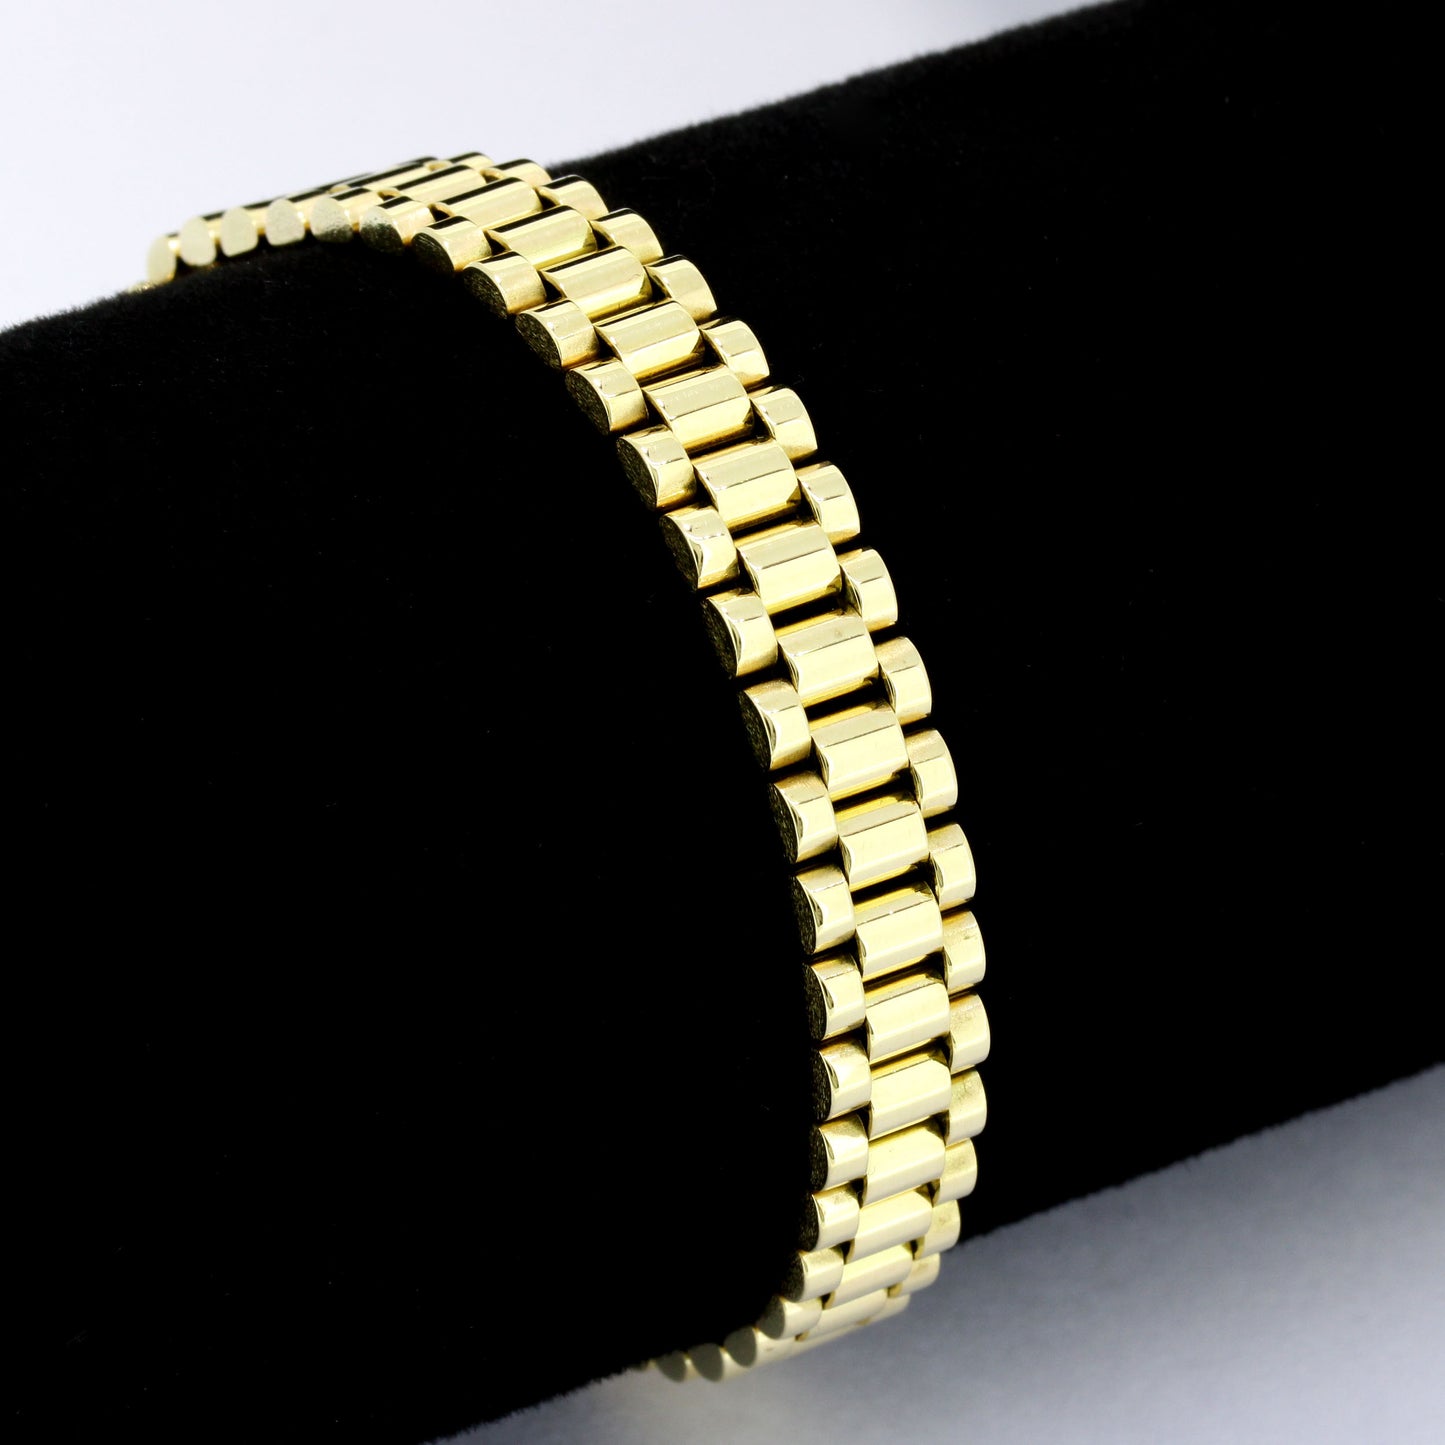 Präsidenten Armband 585 Gold 14 Kt Gelbgold - Armbandlänge 17,5 cm - Wert 2800,-